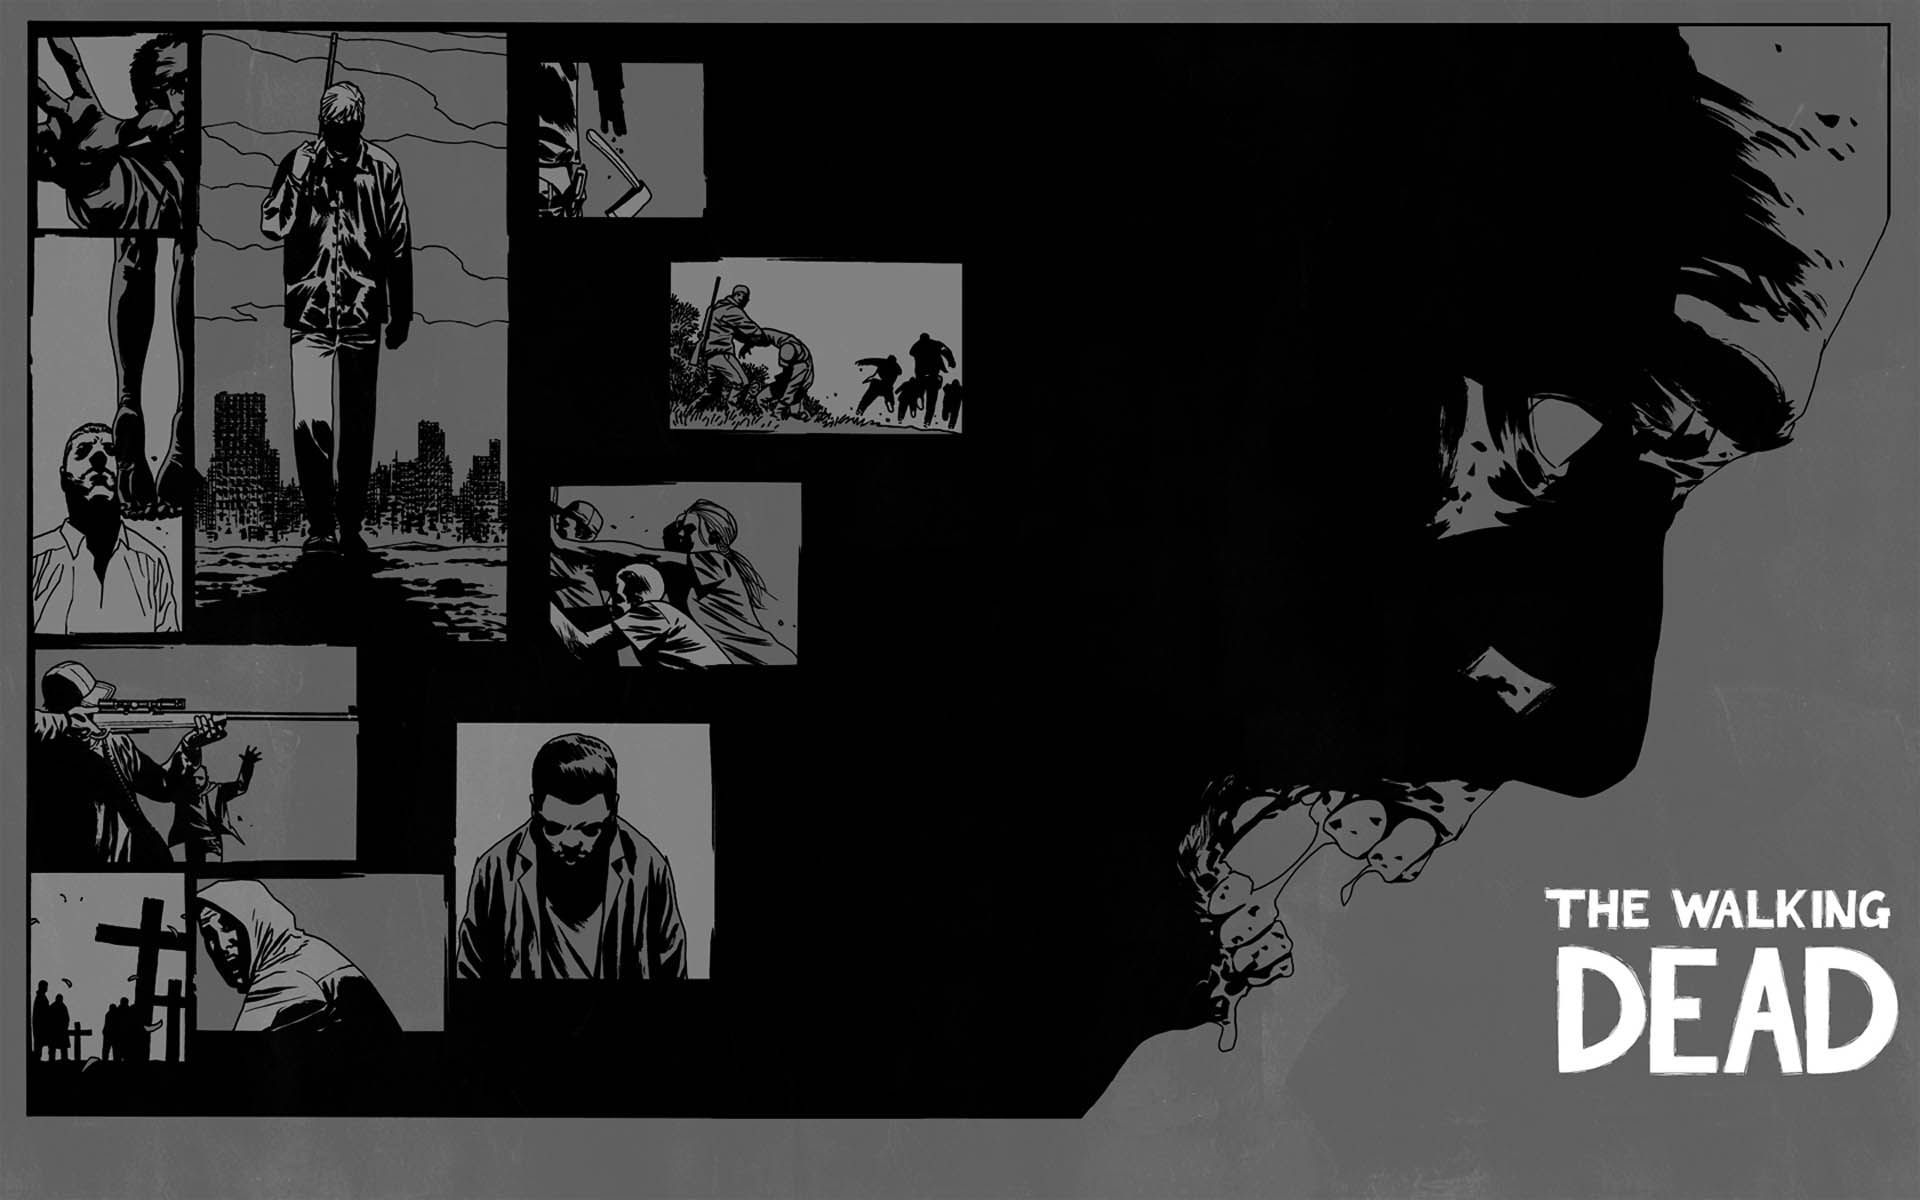 The Walking Dead Desktop 1920x1200 Wallpapers, 1920x1200 ...